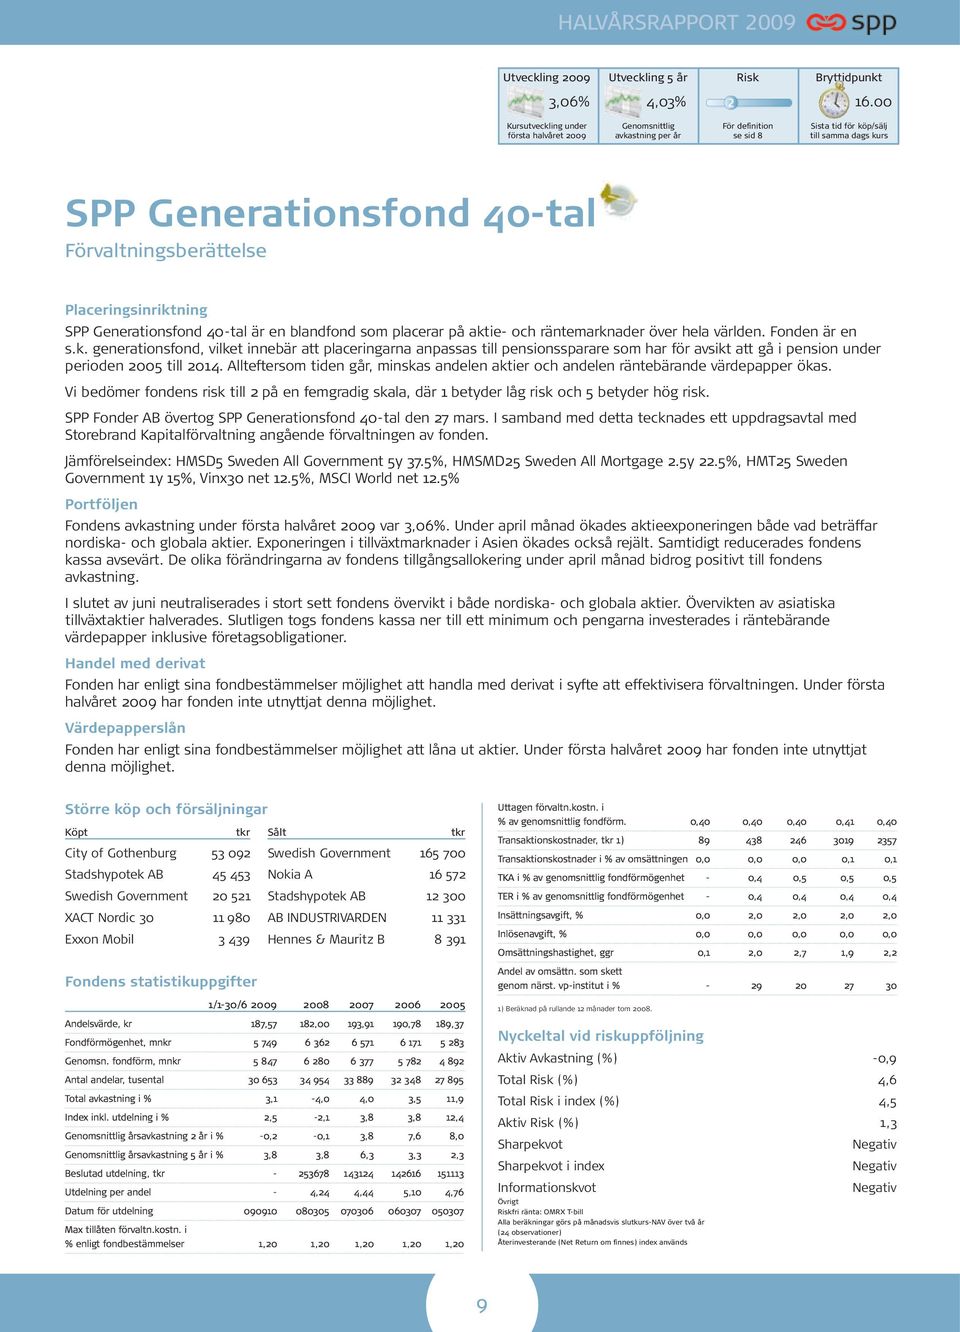 Placeringsinriktning SPP Generationsfond 40-tal är en blandfond som placerar på aktie- och räntemarknader över hela världen. Fonden är en s.k. generationsfond, vilket innebär att placeringarna anpassas till pensionssparare som har för avsikt att gå i pension under perioden 2005 till 2014.